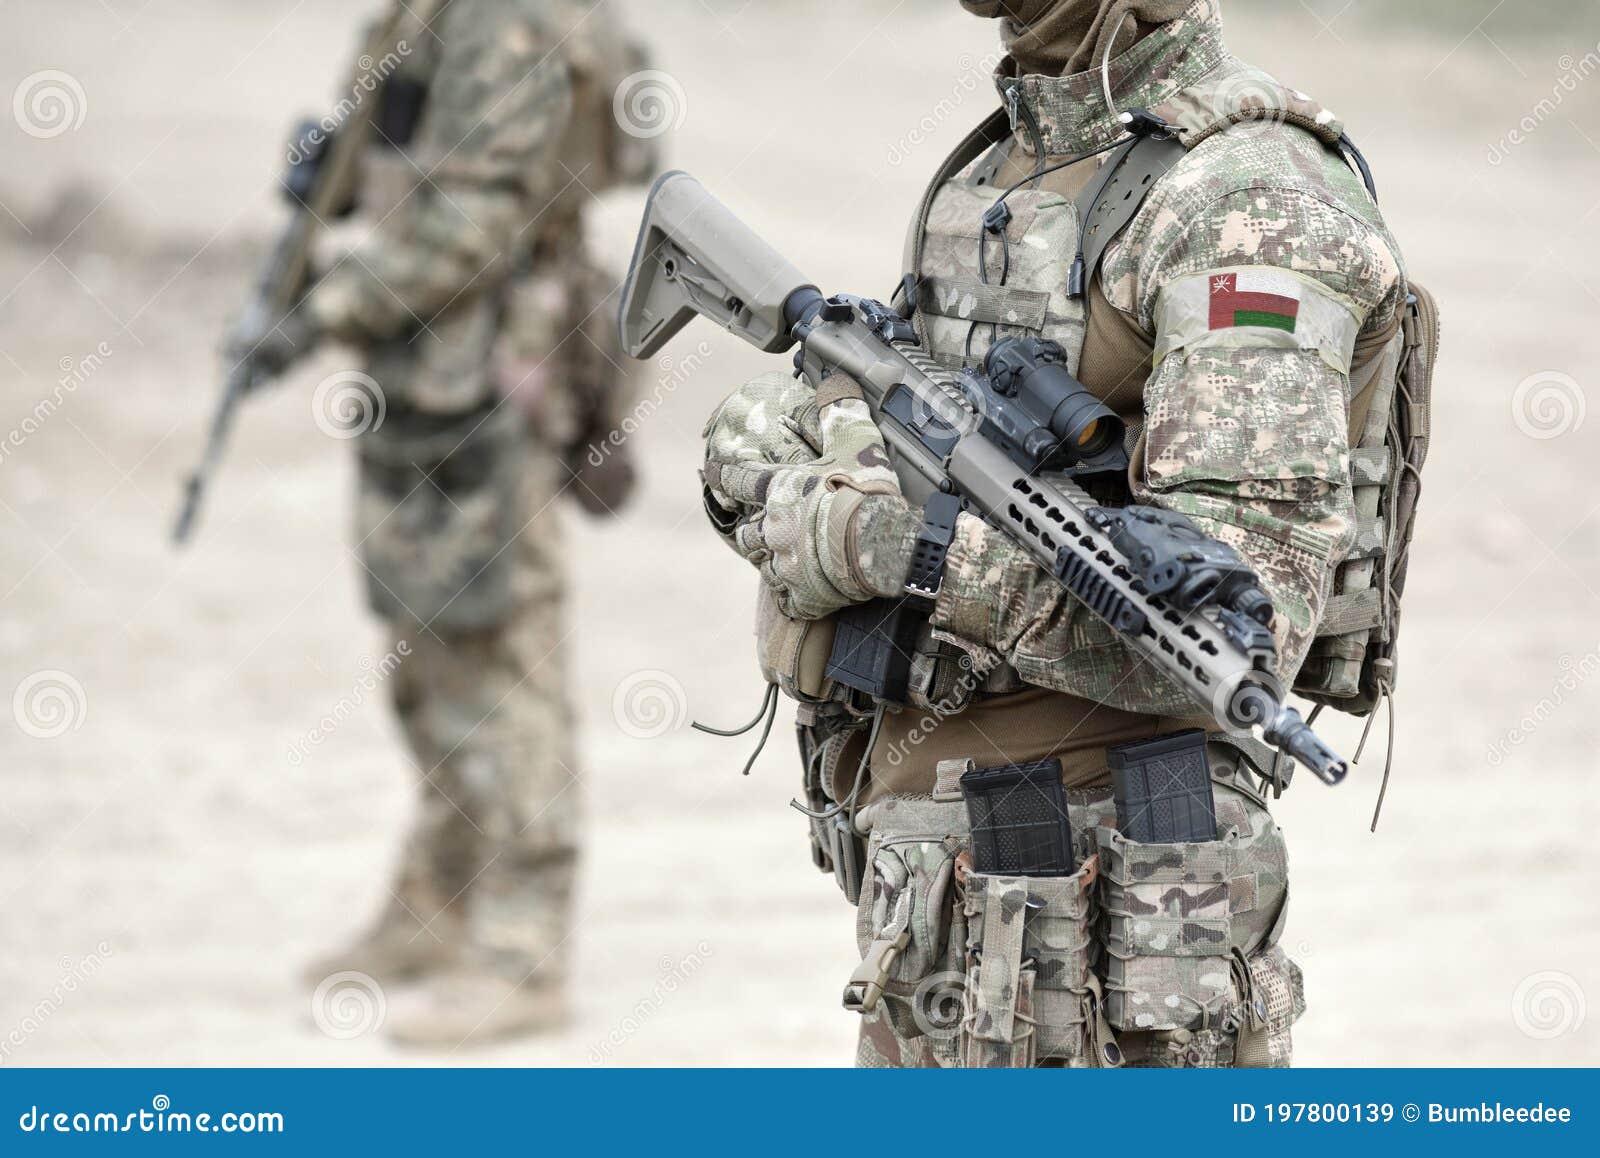 soldiers-machine-gun-flag-oman-military-uniform-collage-soldiers-machine-gun-flag-oman-military-197800139.jpg